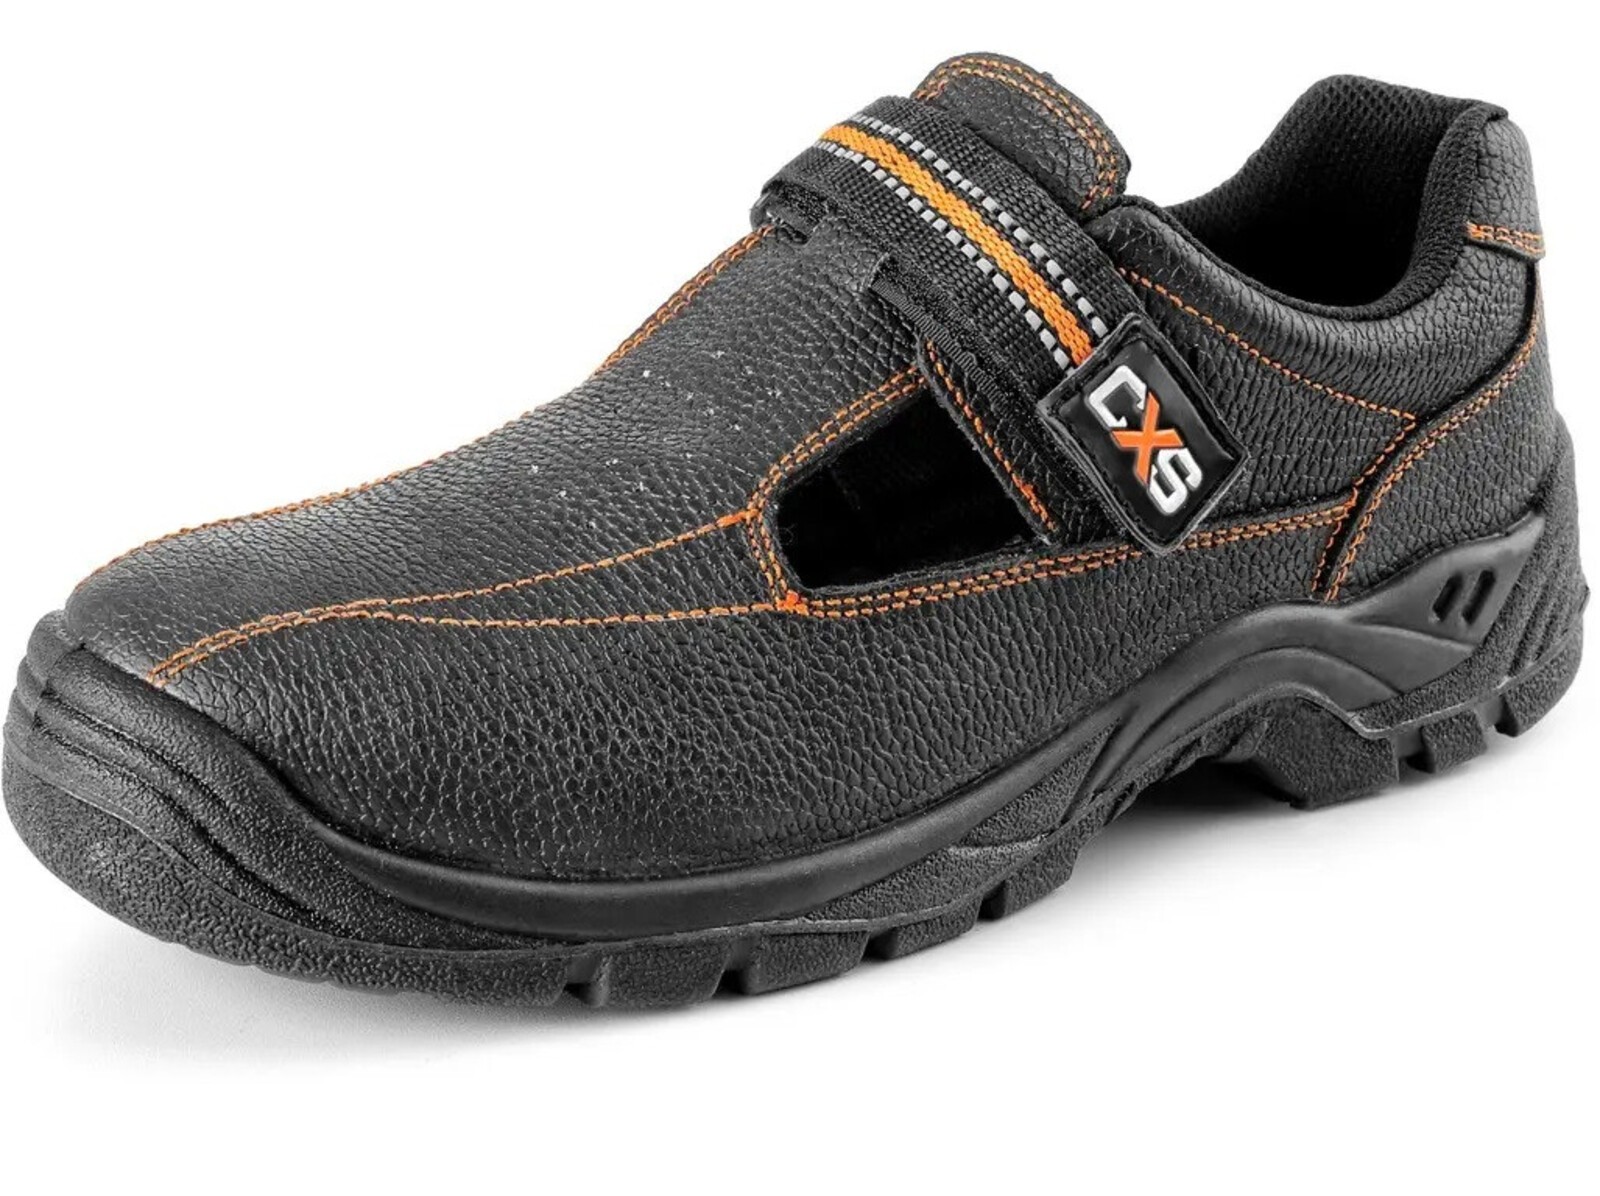 Bezpečnostné sandále CXS Stone Nefrit S1 SRC - veľkosť: 47, farba: čierna/oranžová